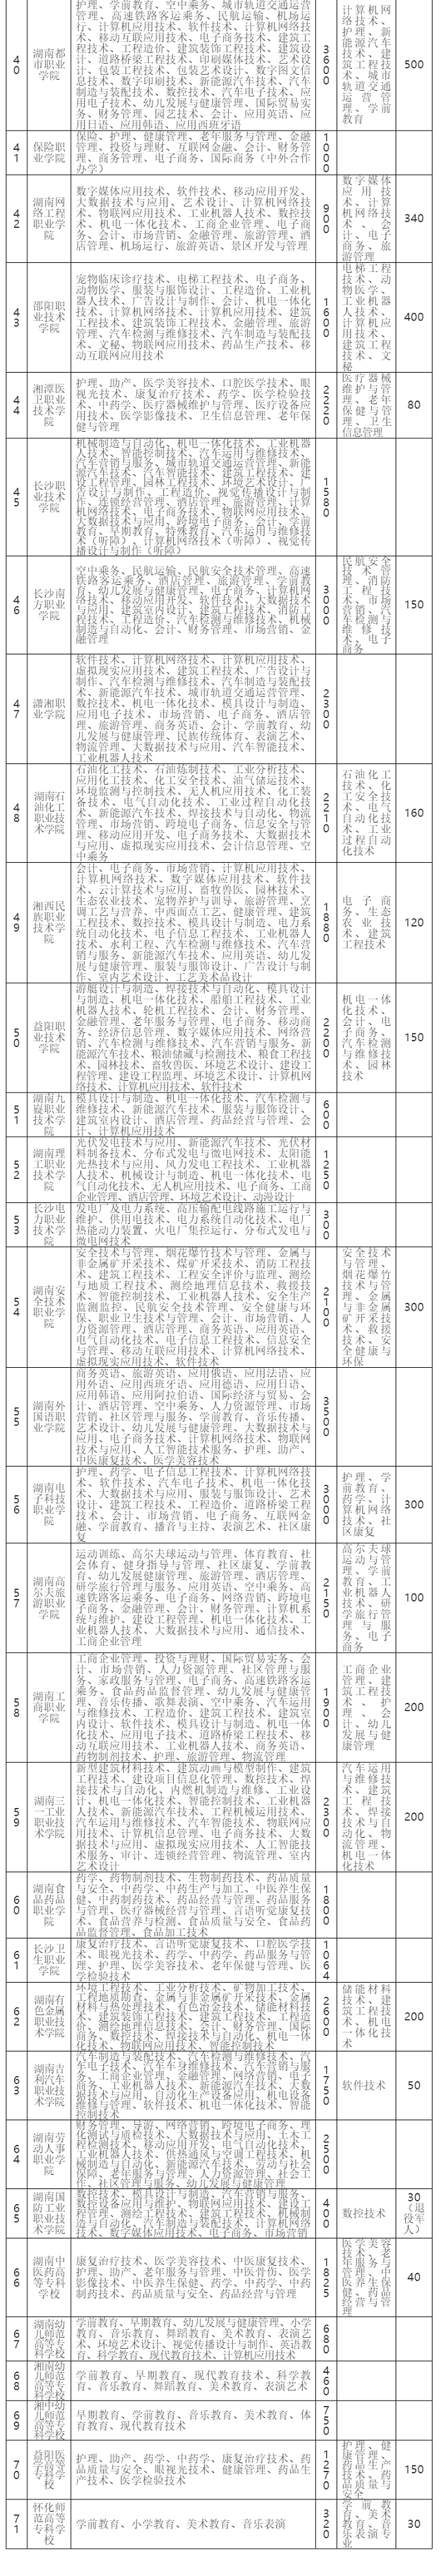 2020年湖南高职院校（高专学校）单独招生专业及规模